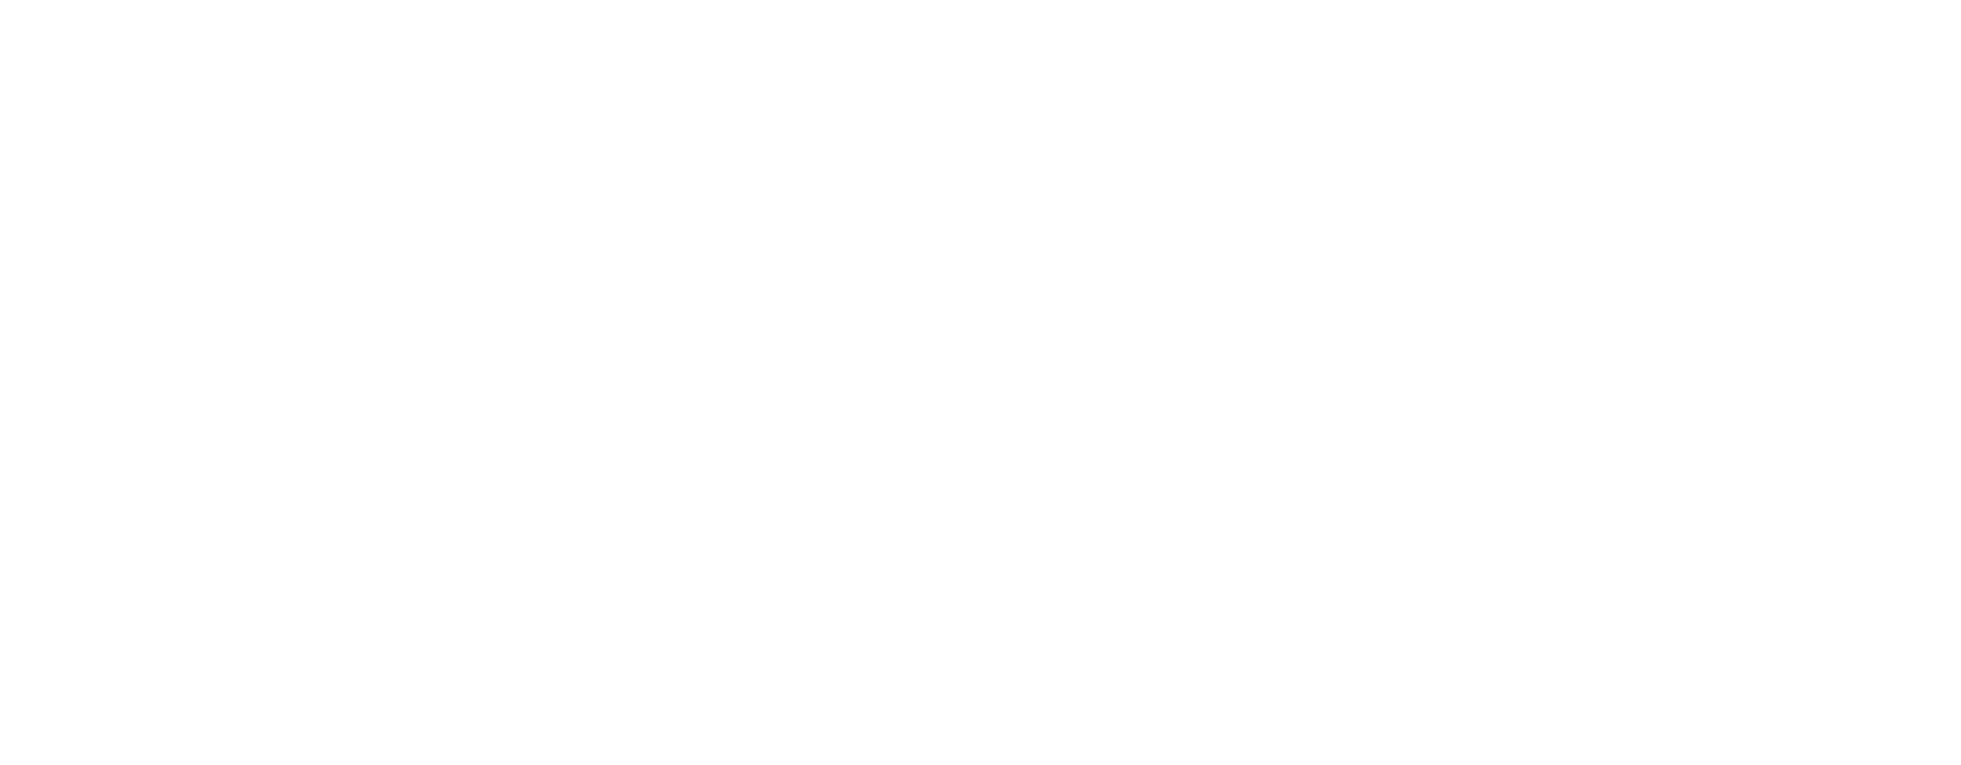 Martinská Osteria